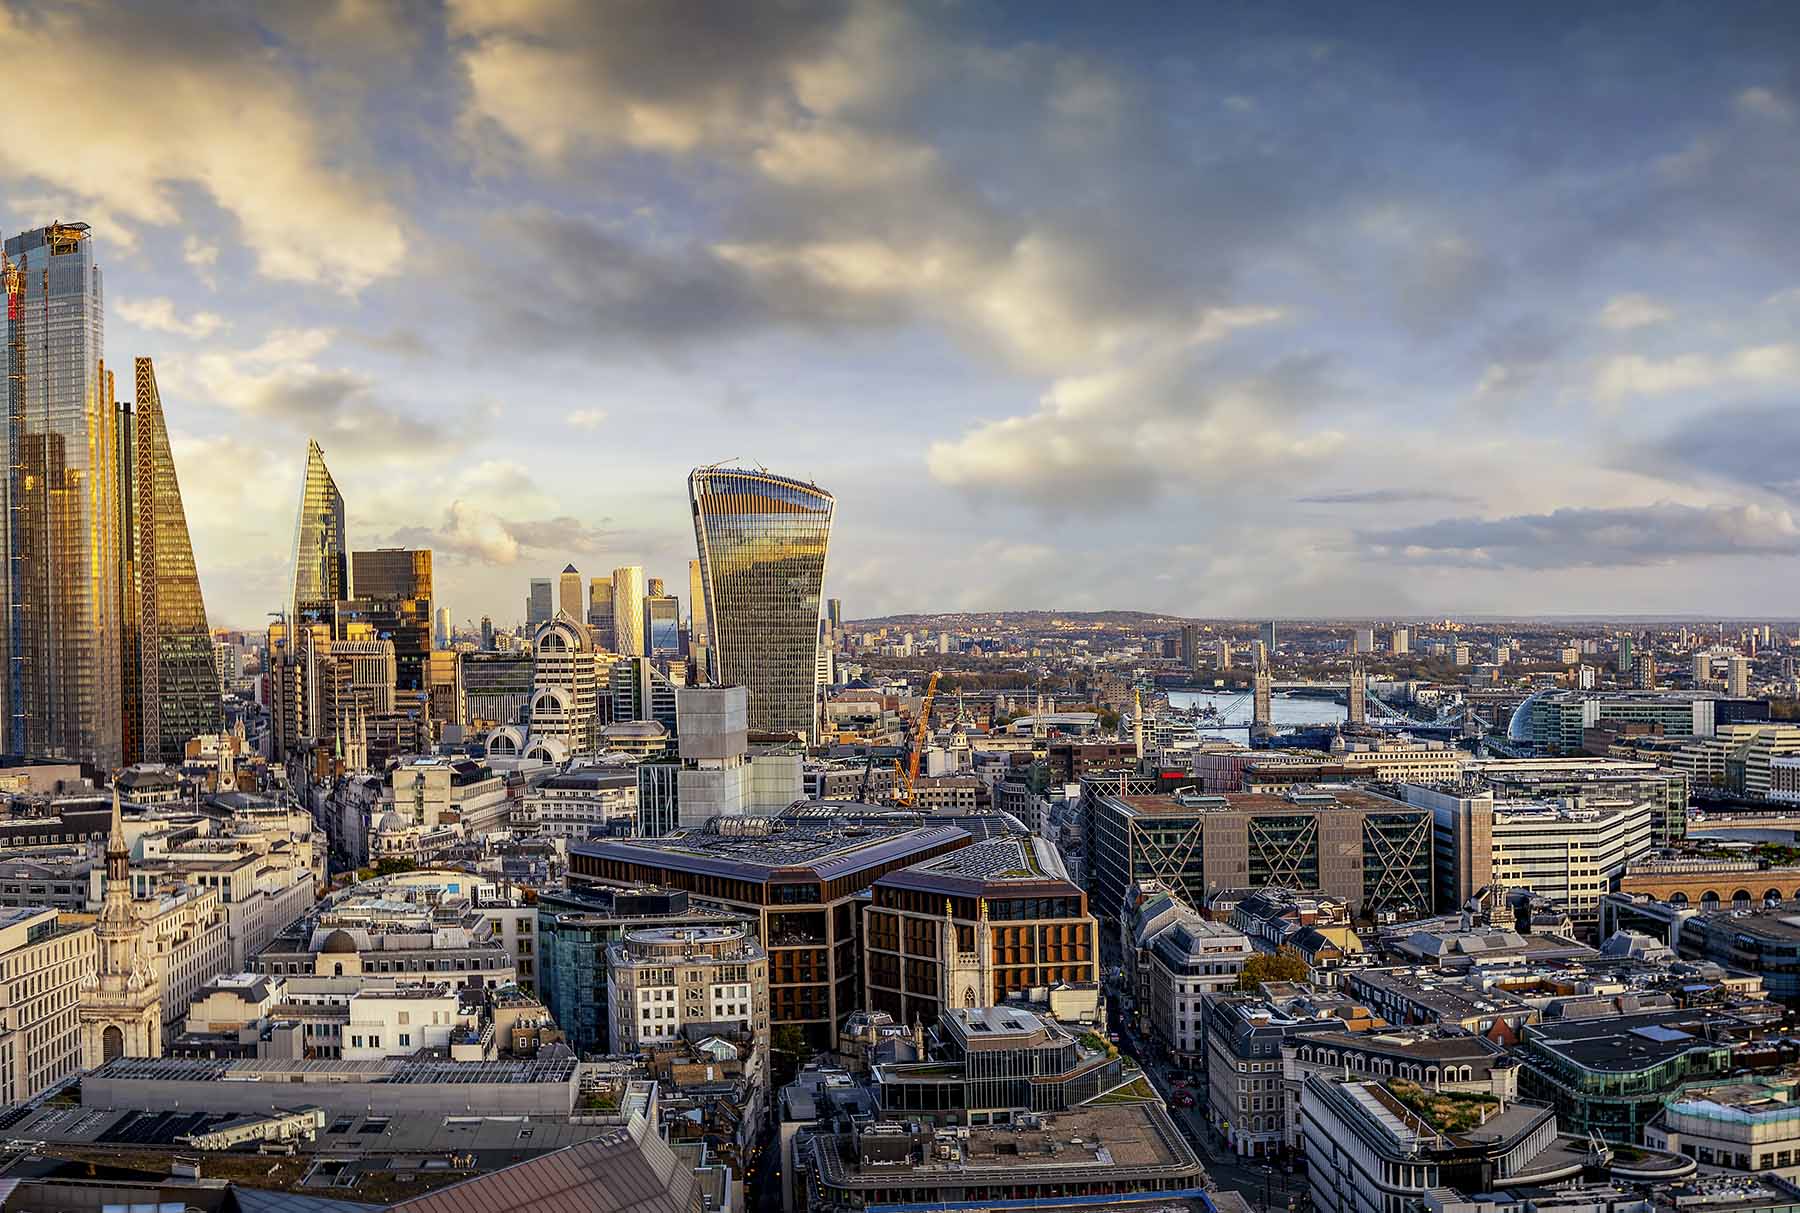 Birds-eye view of London